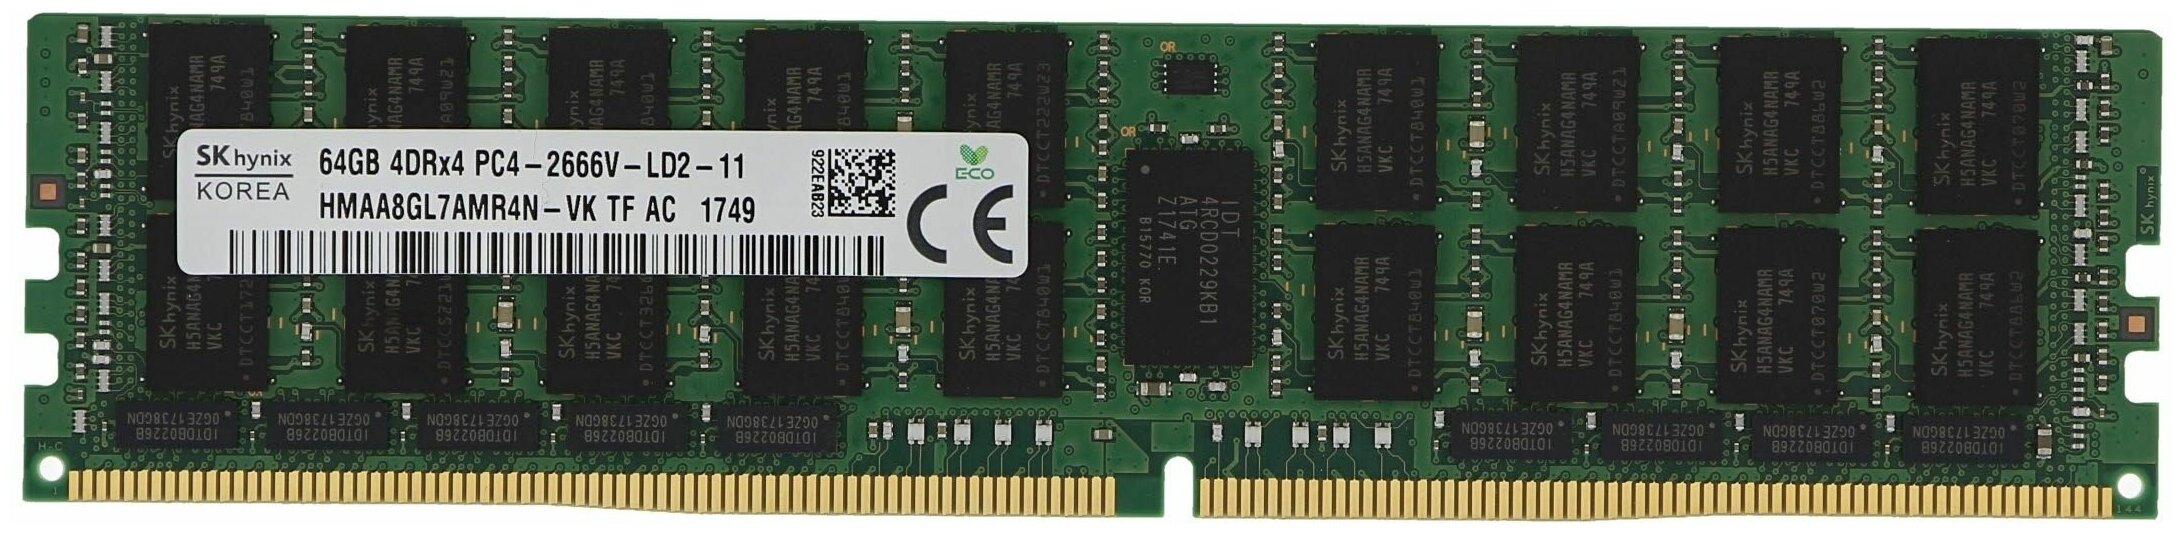 Память DDR4 LRDIMM 64Gb, 2666MHz, CL19, 1.2V, Quad Rank, ECC Reg Load Reduced, Hynix (HMAA8GL7AMR4N-VK)